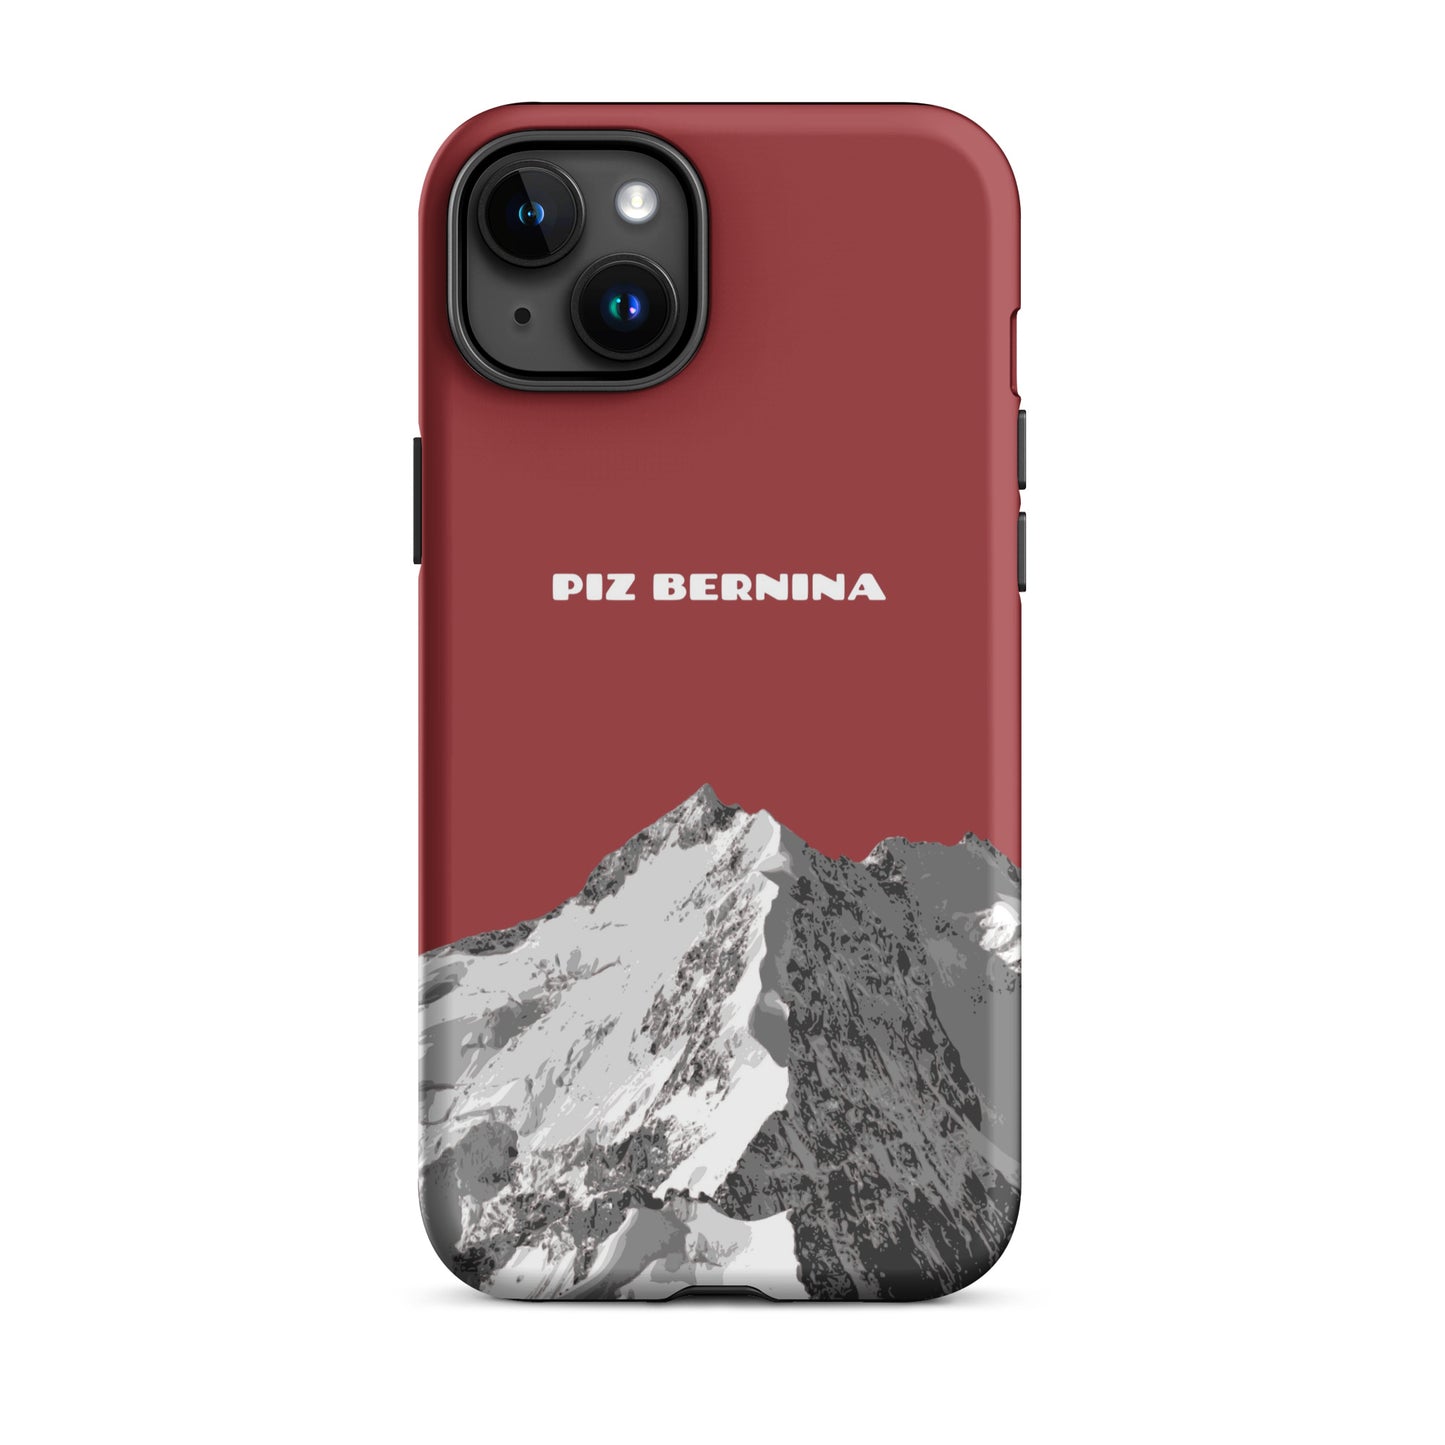 Hülle für das iPhone 15 Plus von Apple in der Farbe Rot, dass den Piz Bernina in Graubünden zeigt.